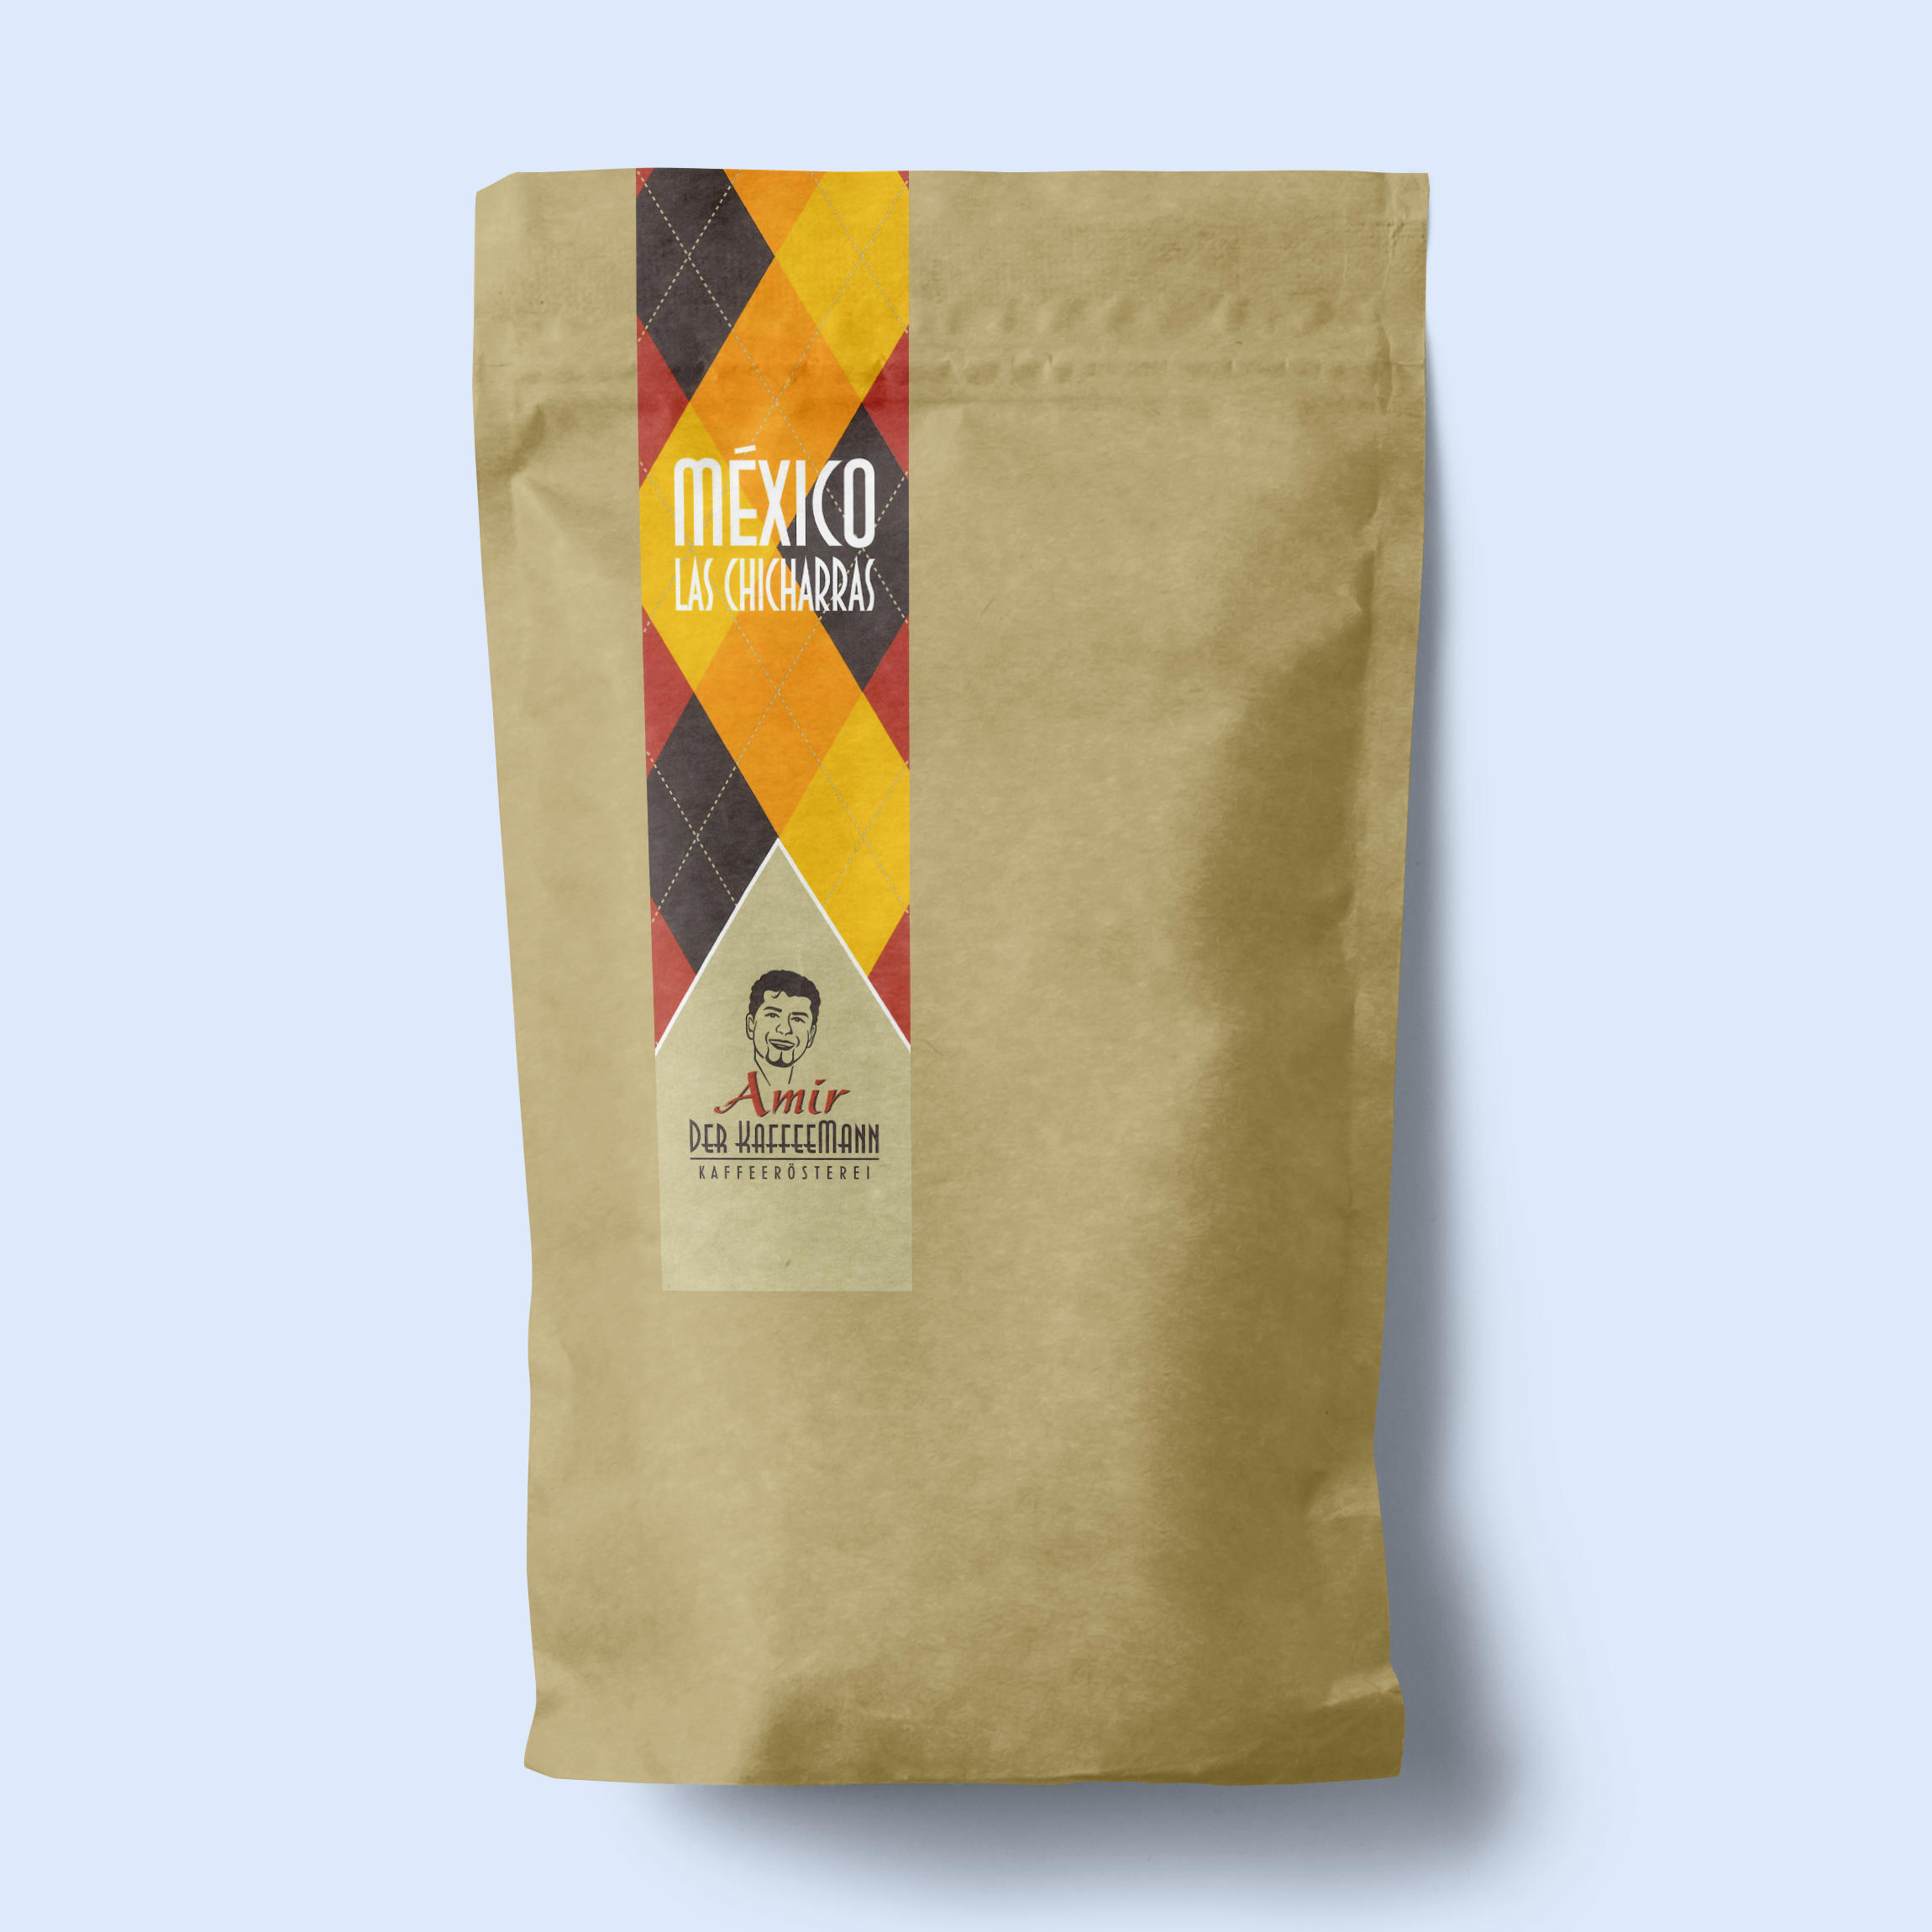 Verpackung des México las Chicharras Kaffees, hervorgehoben durch sein süßes, florales und schokoladiges Aroma, geeignet für diverse Brühmethoden.